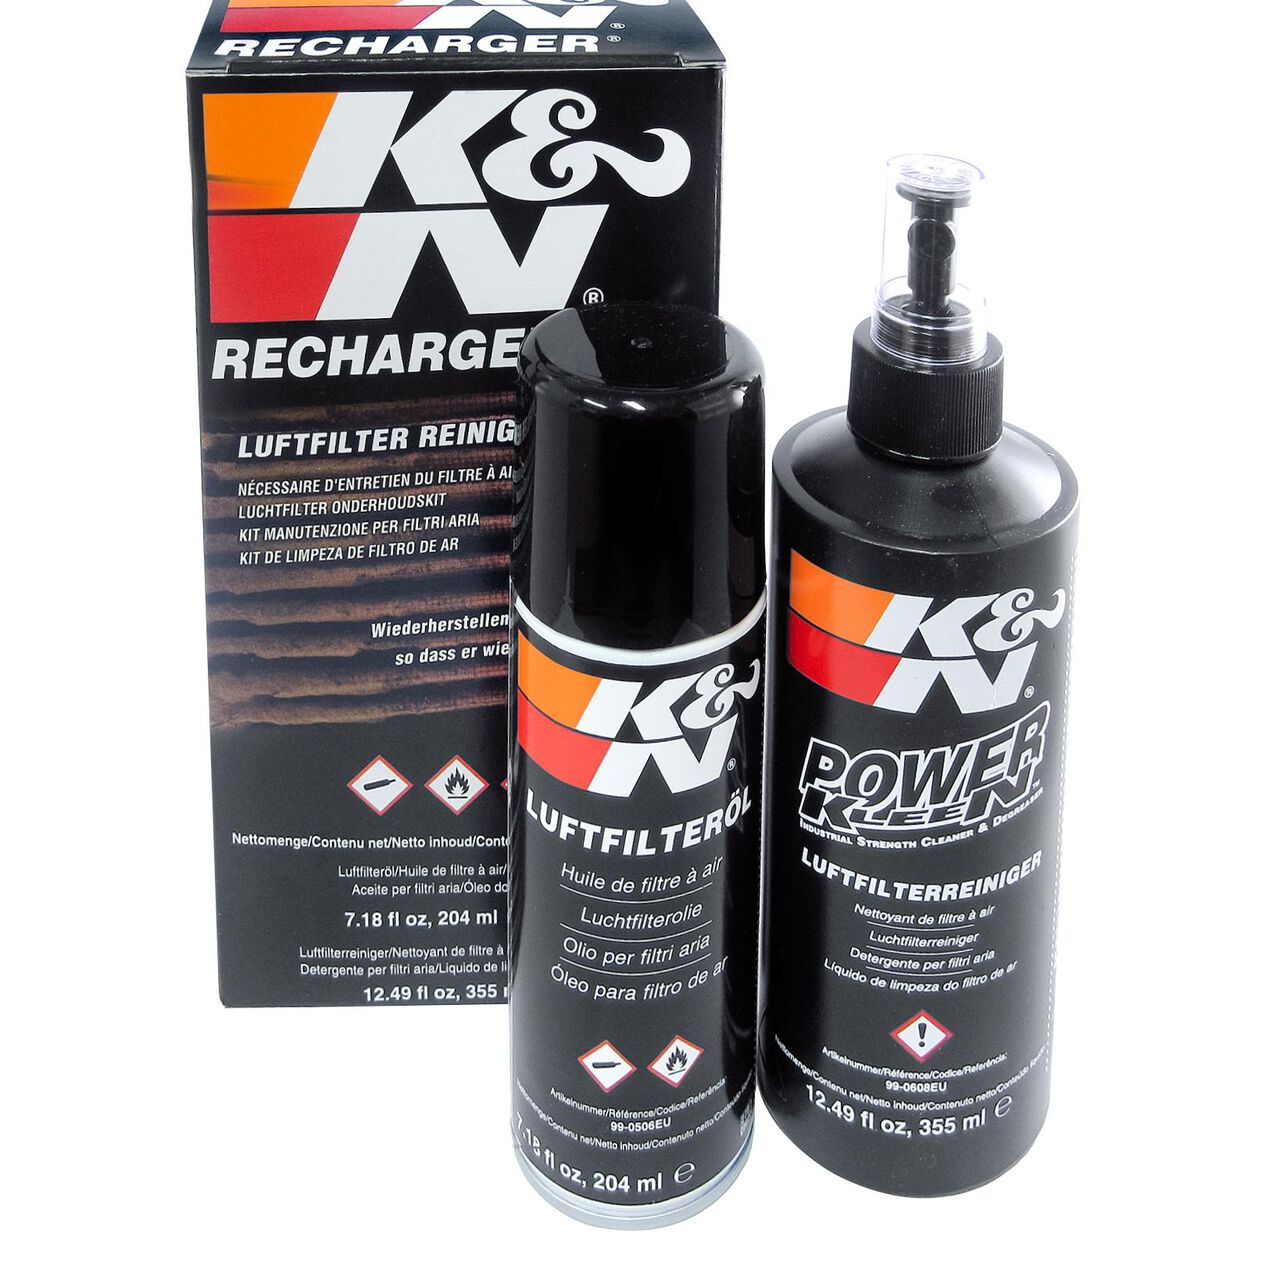 K&N Recharger Filter Öl Reiniger für Harley und Motorrad, 21,00 €